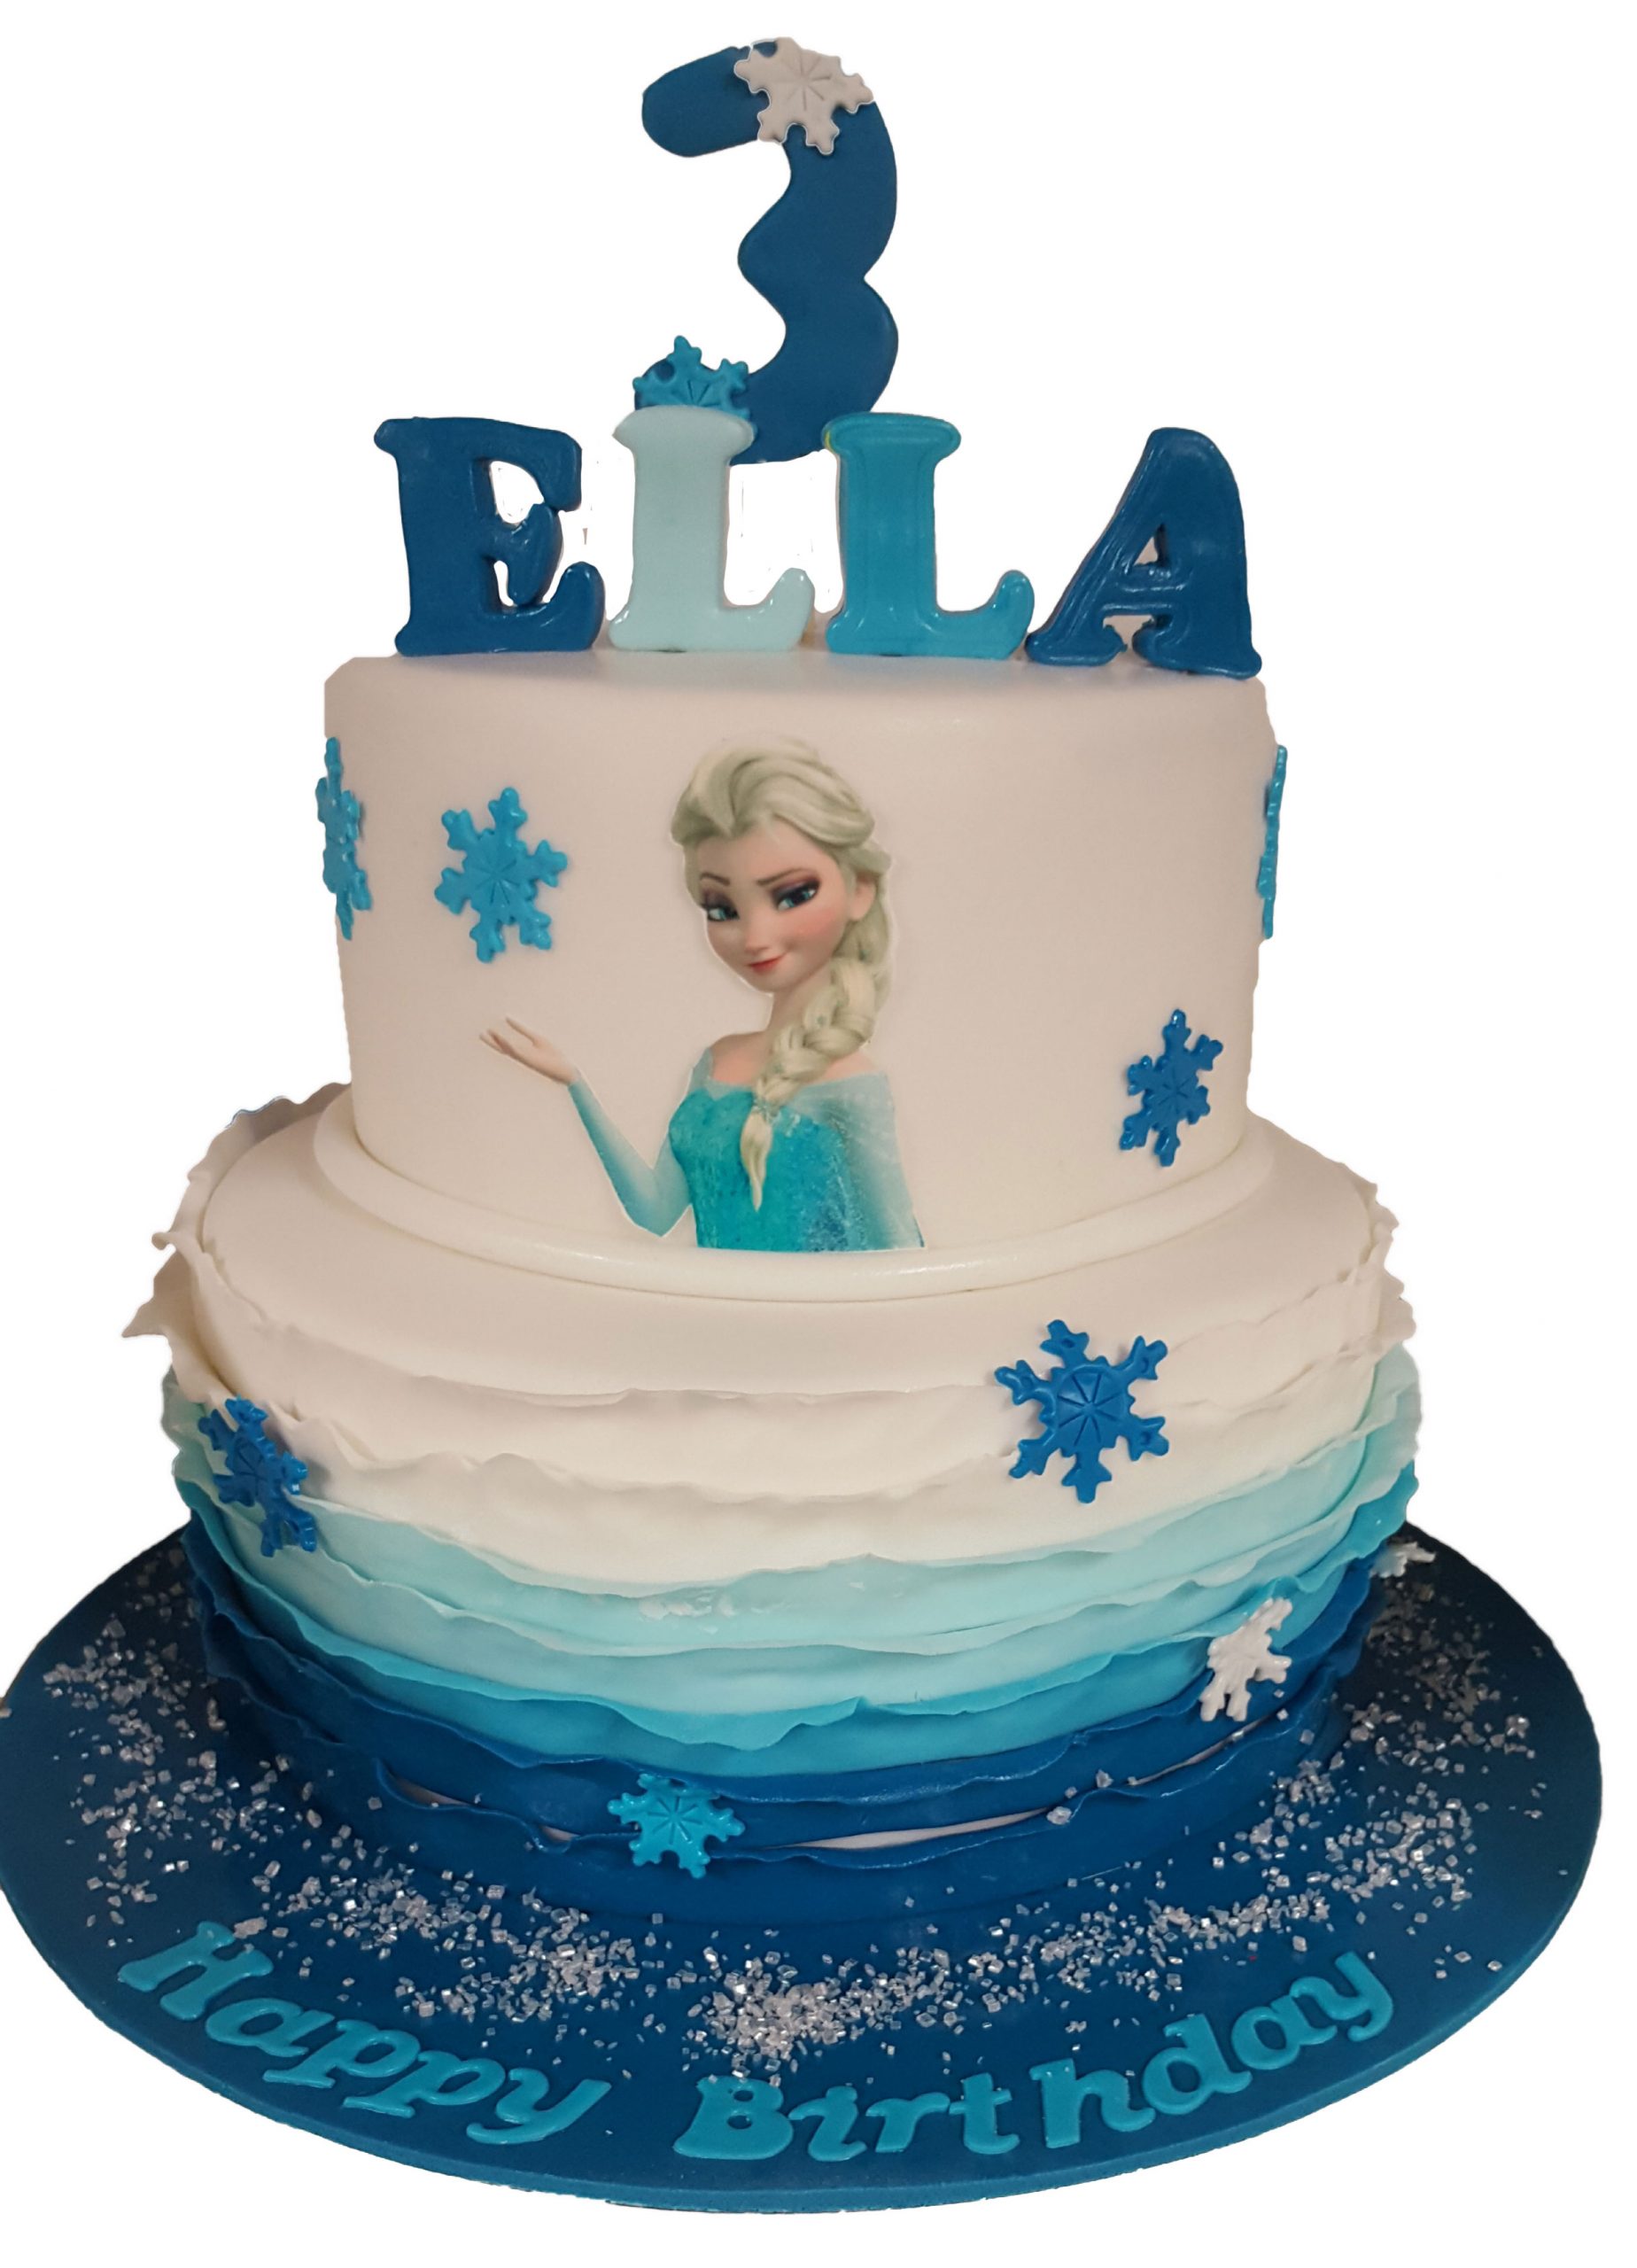 Elsa Cake For Birthday